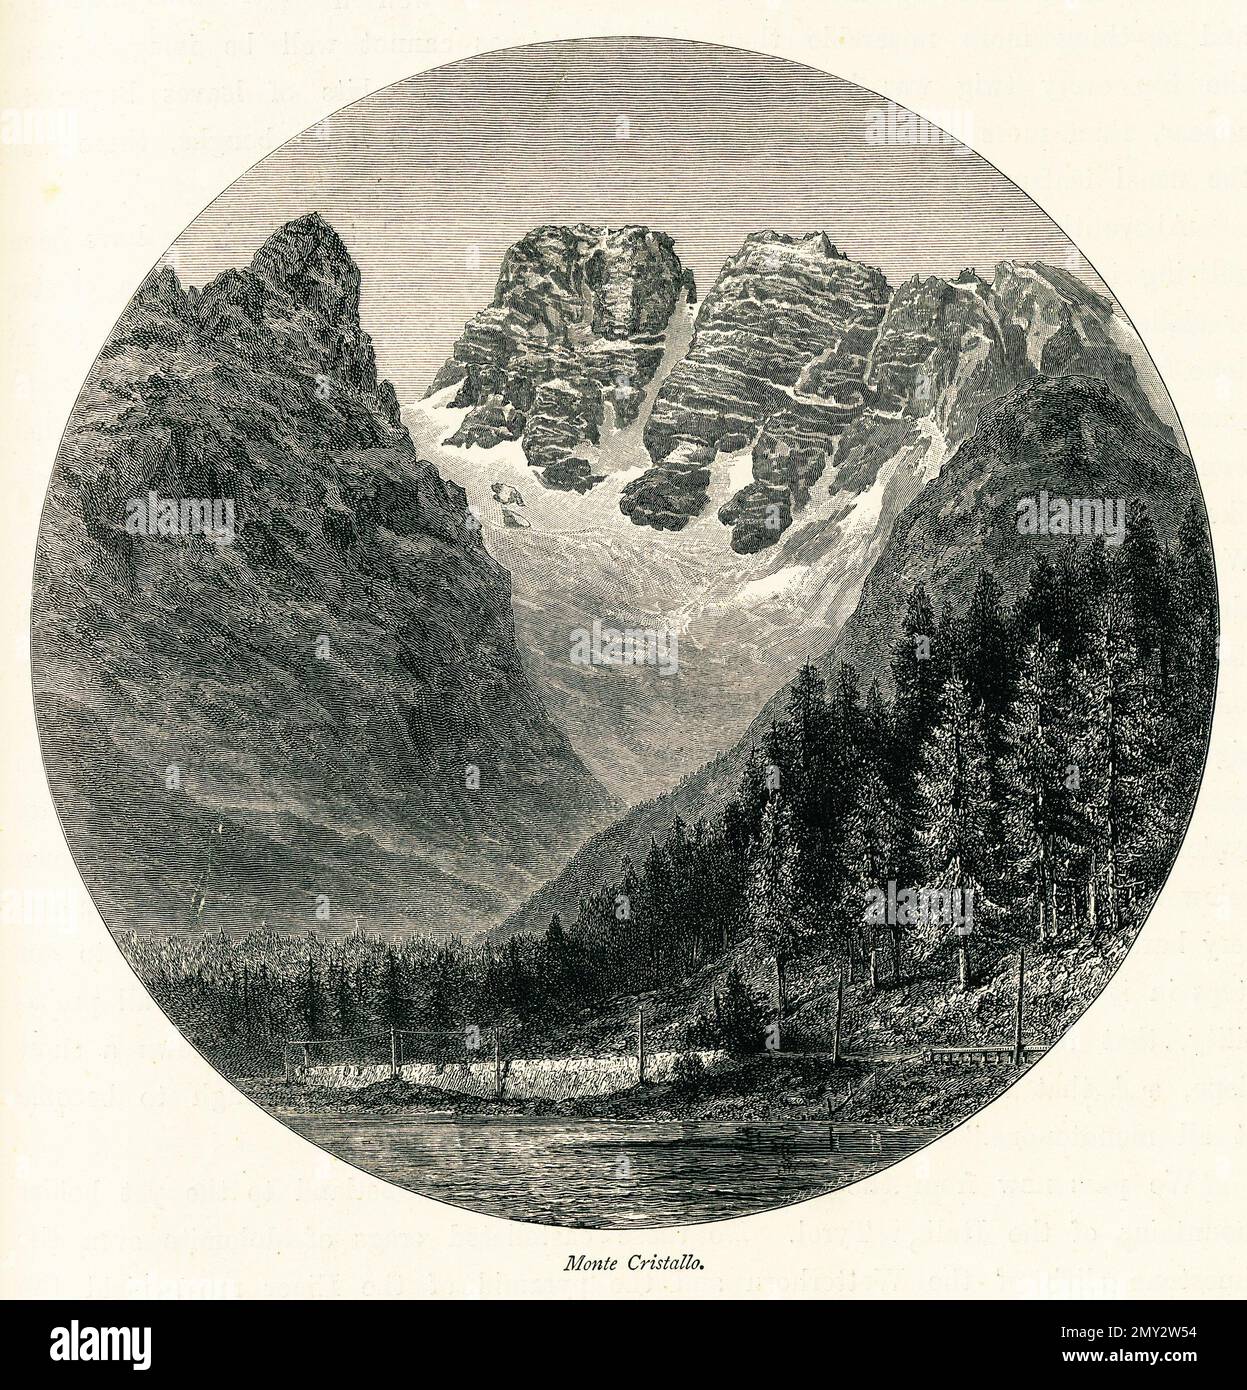 Antica illustrazione del Monte Cristallo nel nord Italia. Incisione pubblicata in picturesque Europe, Vol. V (Cassell & Company, Limited: Londo Foto Stock